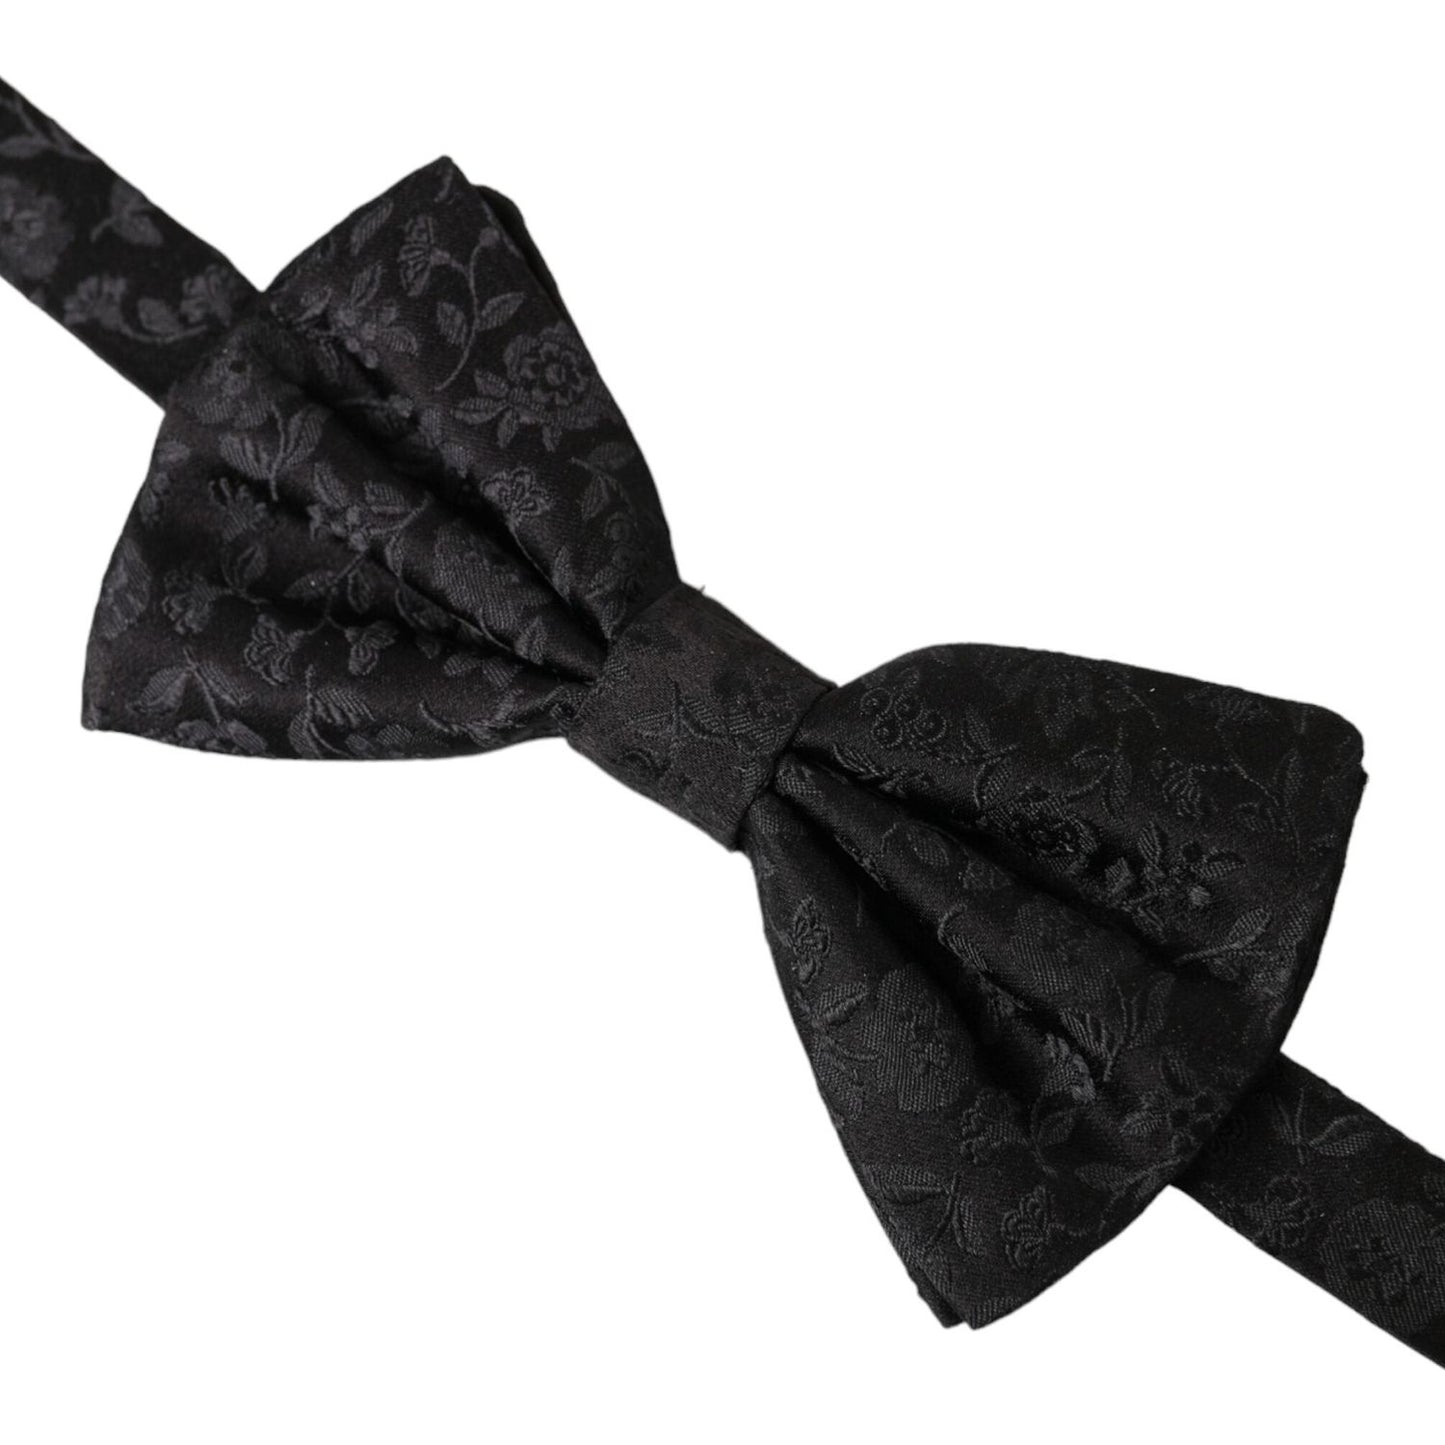 Black Brocade Silk Adjustable Neck Men Bow Tie